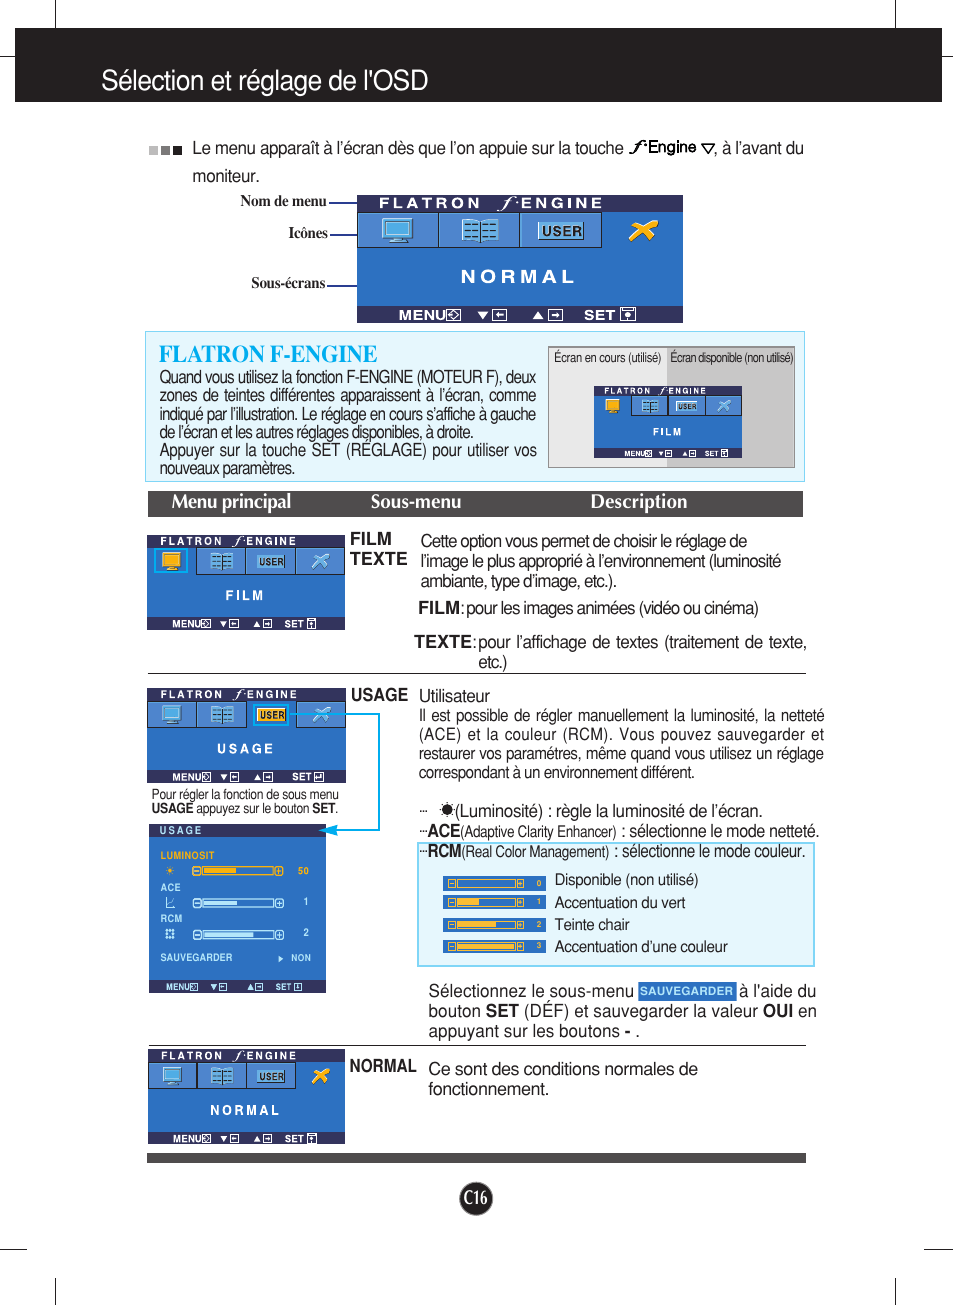 Flatron f-engine, Sélection et réglage de l'osd, Menu principal sous-menu description | LG L1919S-BF Manuel d'utilisation | Page 17 / 26